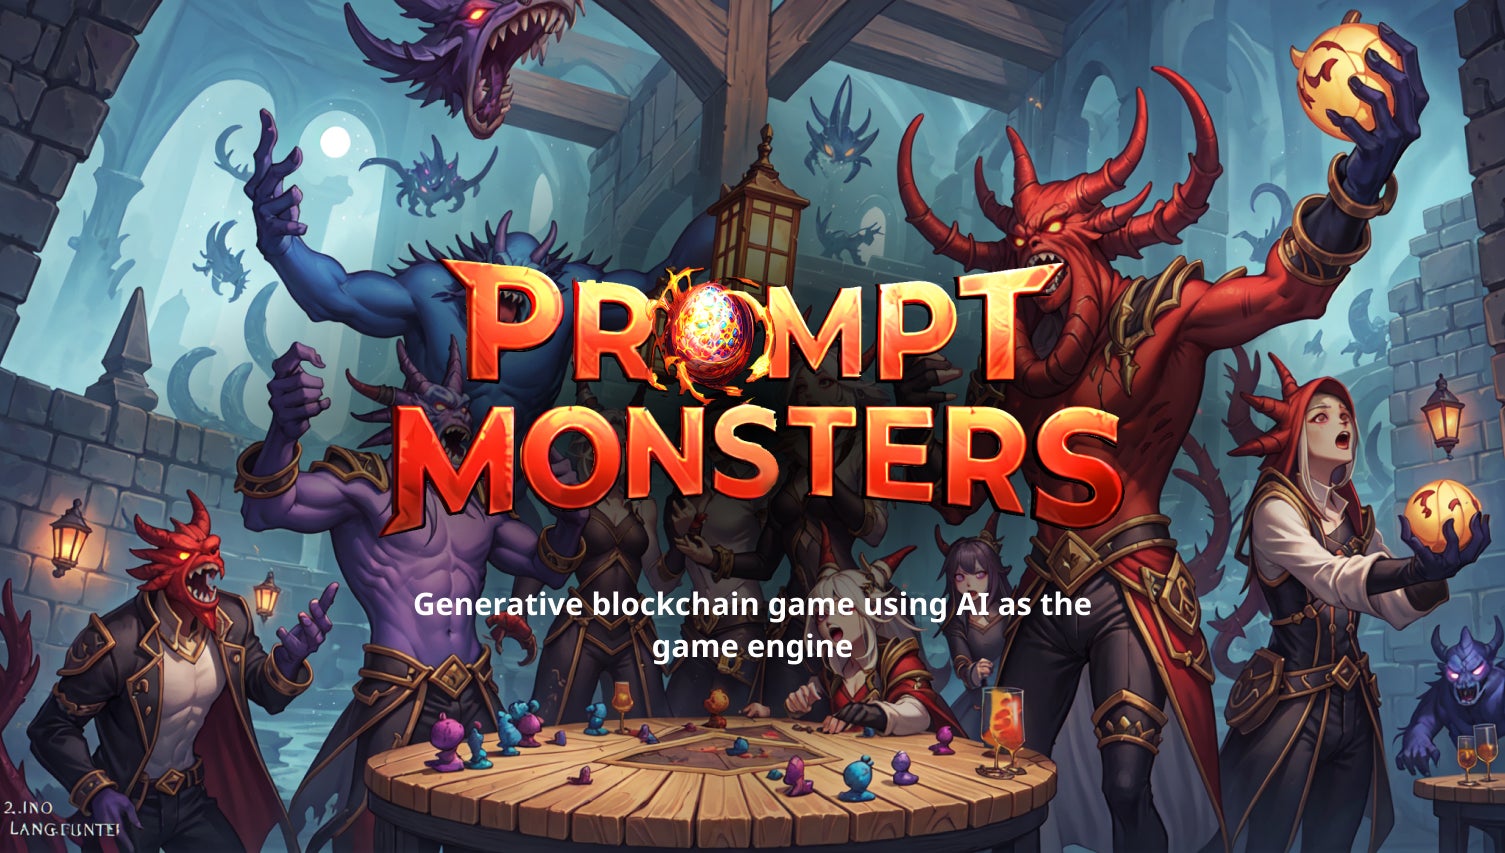 AIをゲームエンジンとした、ブロックチェーンゲーム”Prompt Monsters”をOasysチェーンのMCH Verse上に5月1日リリース